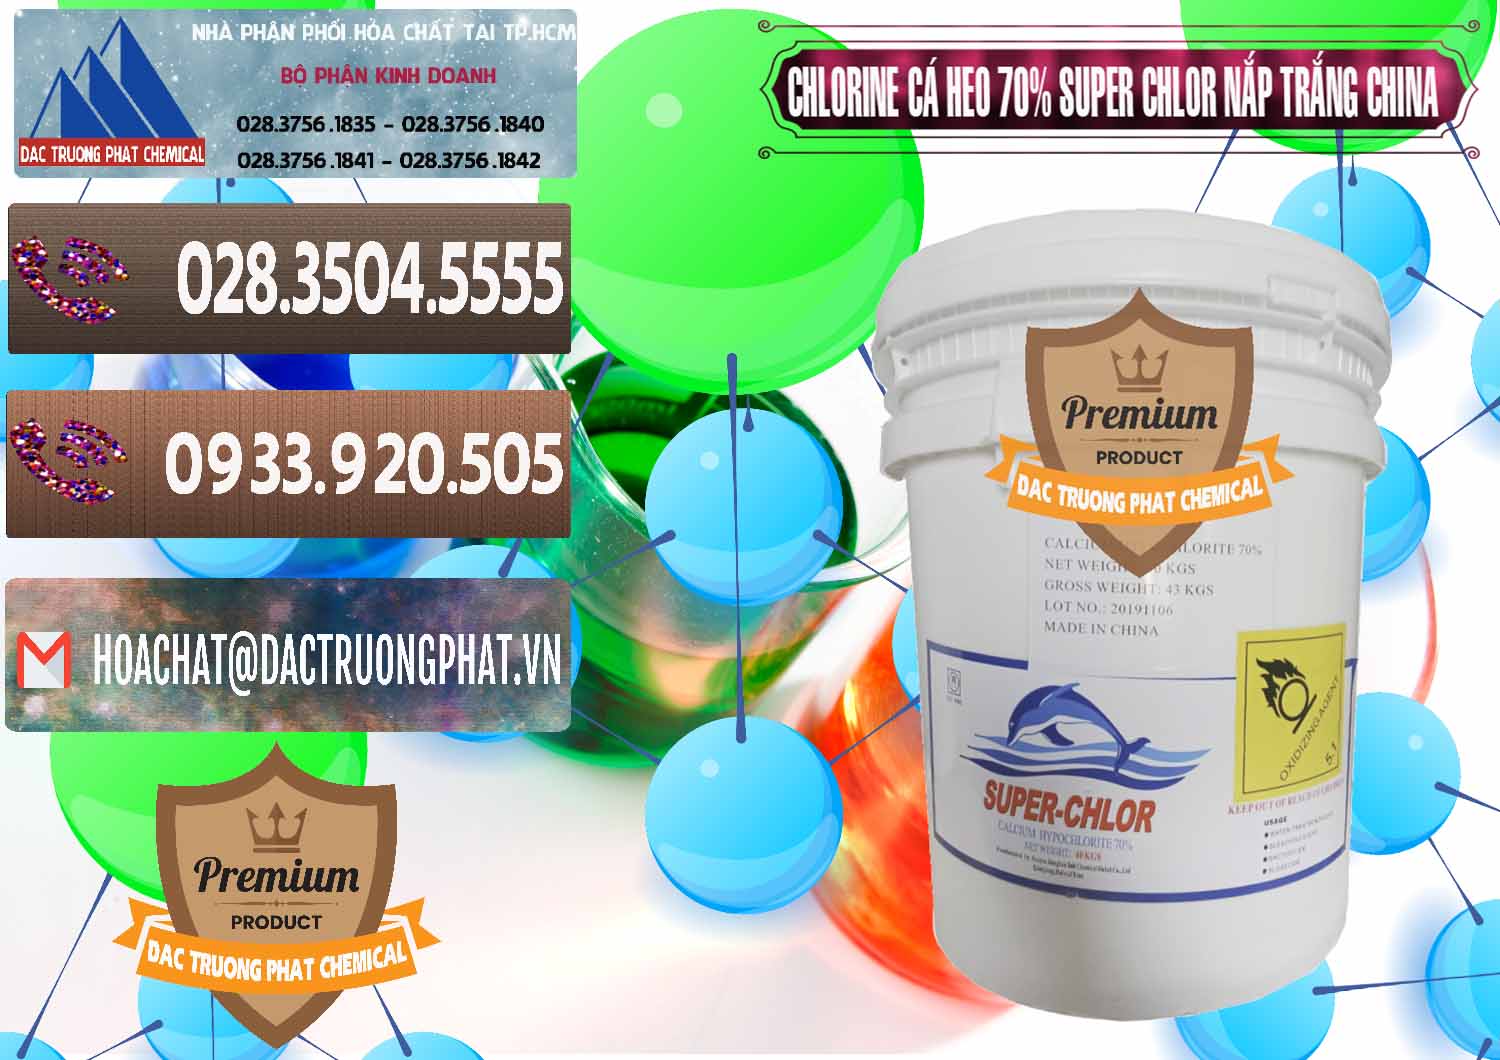 Nơi cung cấp & bán Clorin - Chlorine Cá Heo 70% Super Chlor Nắp Trắng Trung Quốc China - 0240 - Cty chuyên kinh doanh - cung cấp hóa chất tại TP.HCM - hoachatviet.net